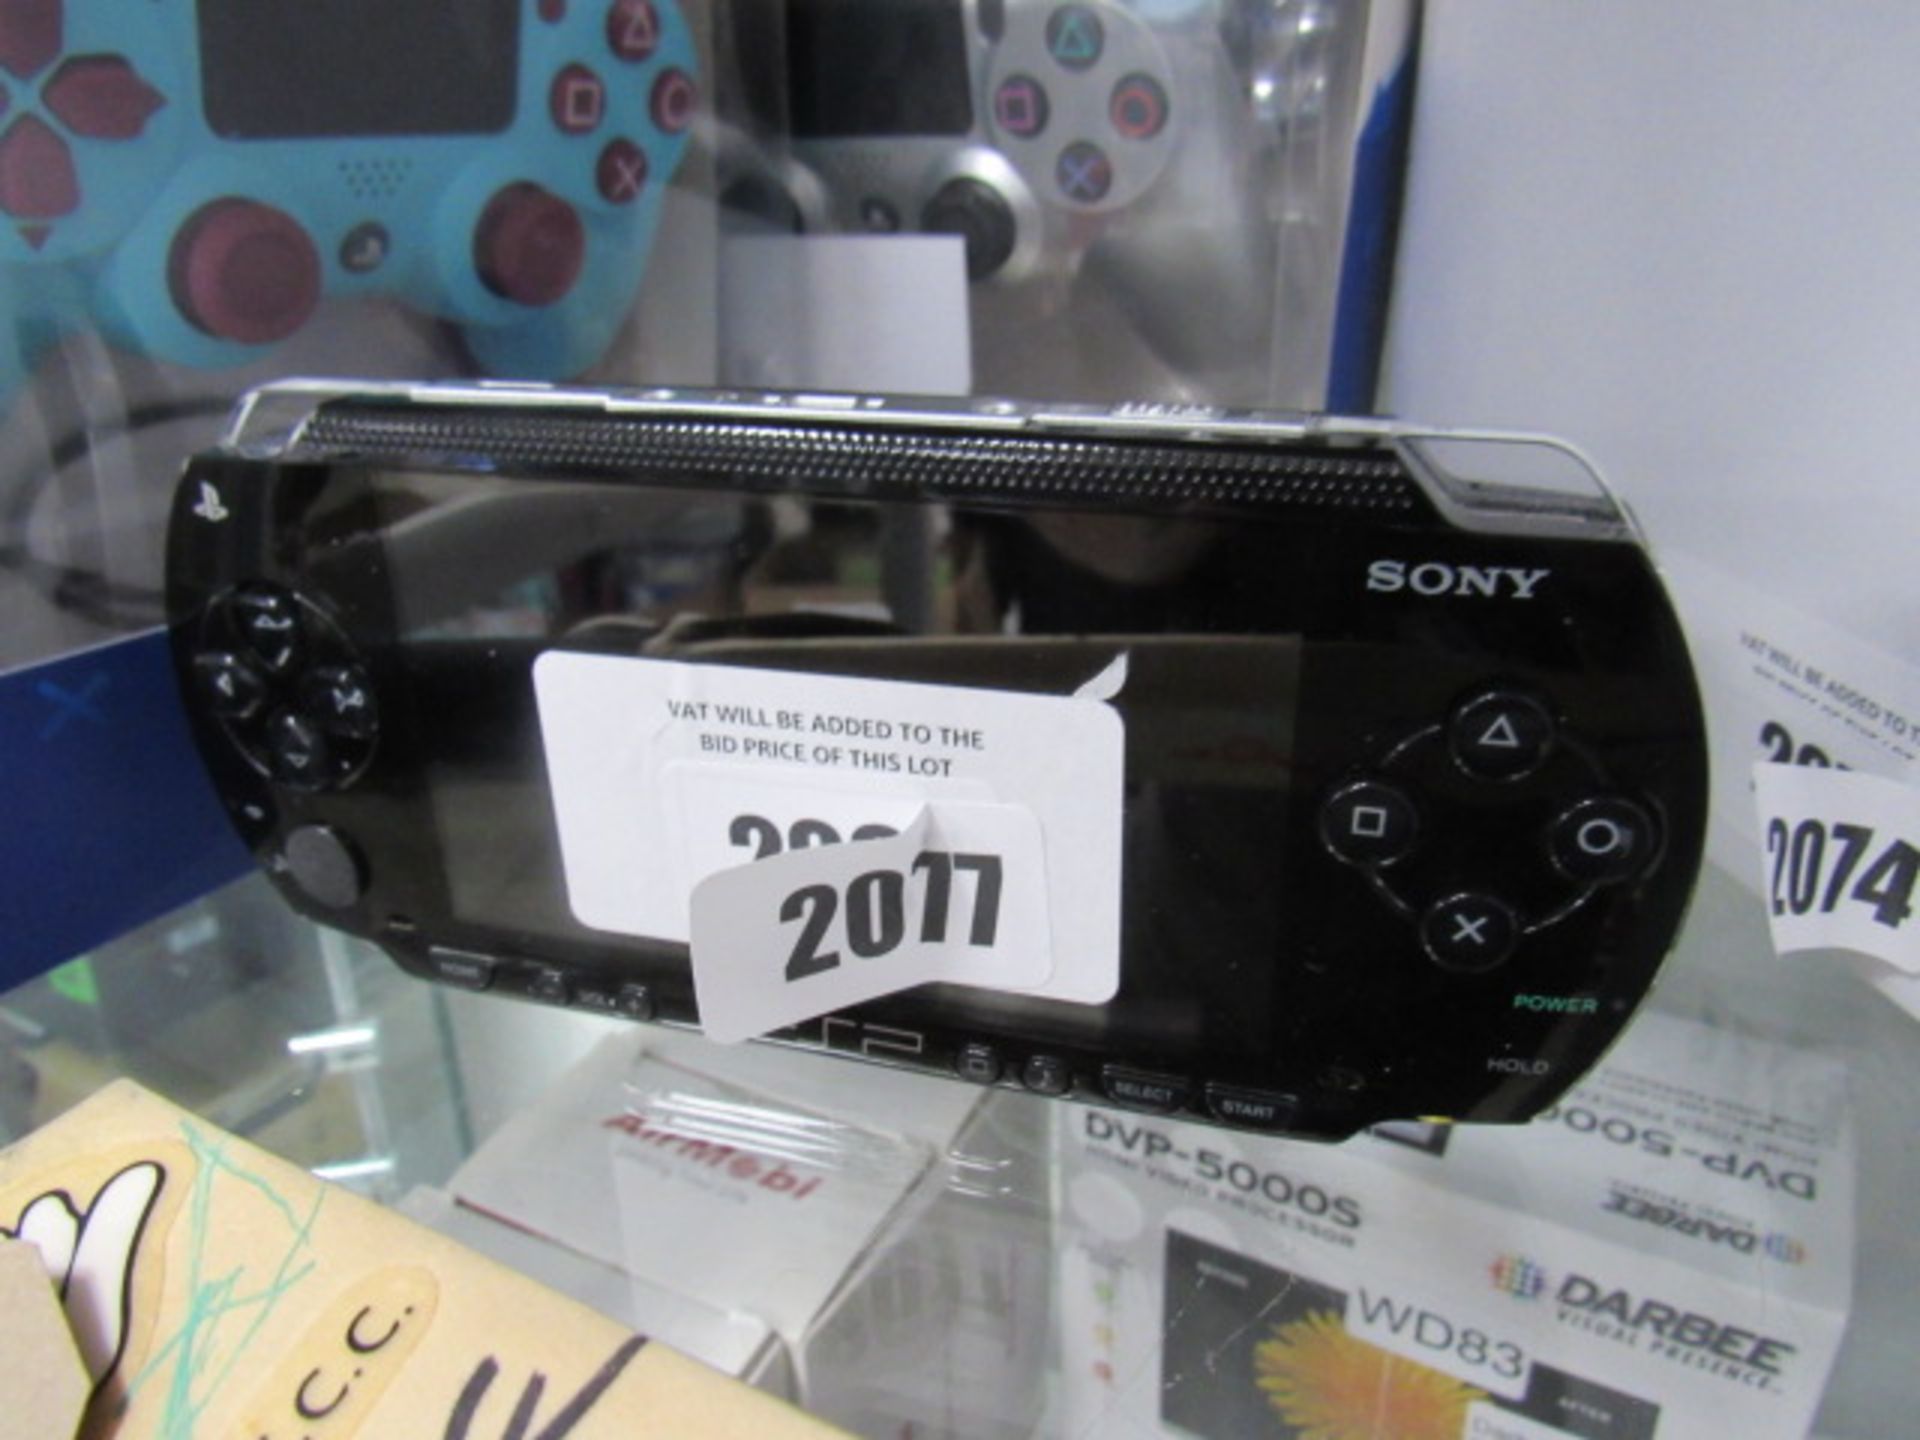 2267 Sony PSP in black